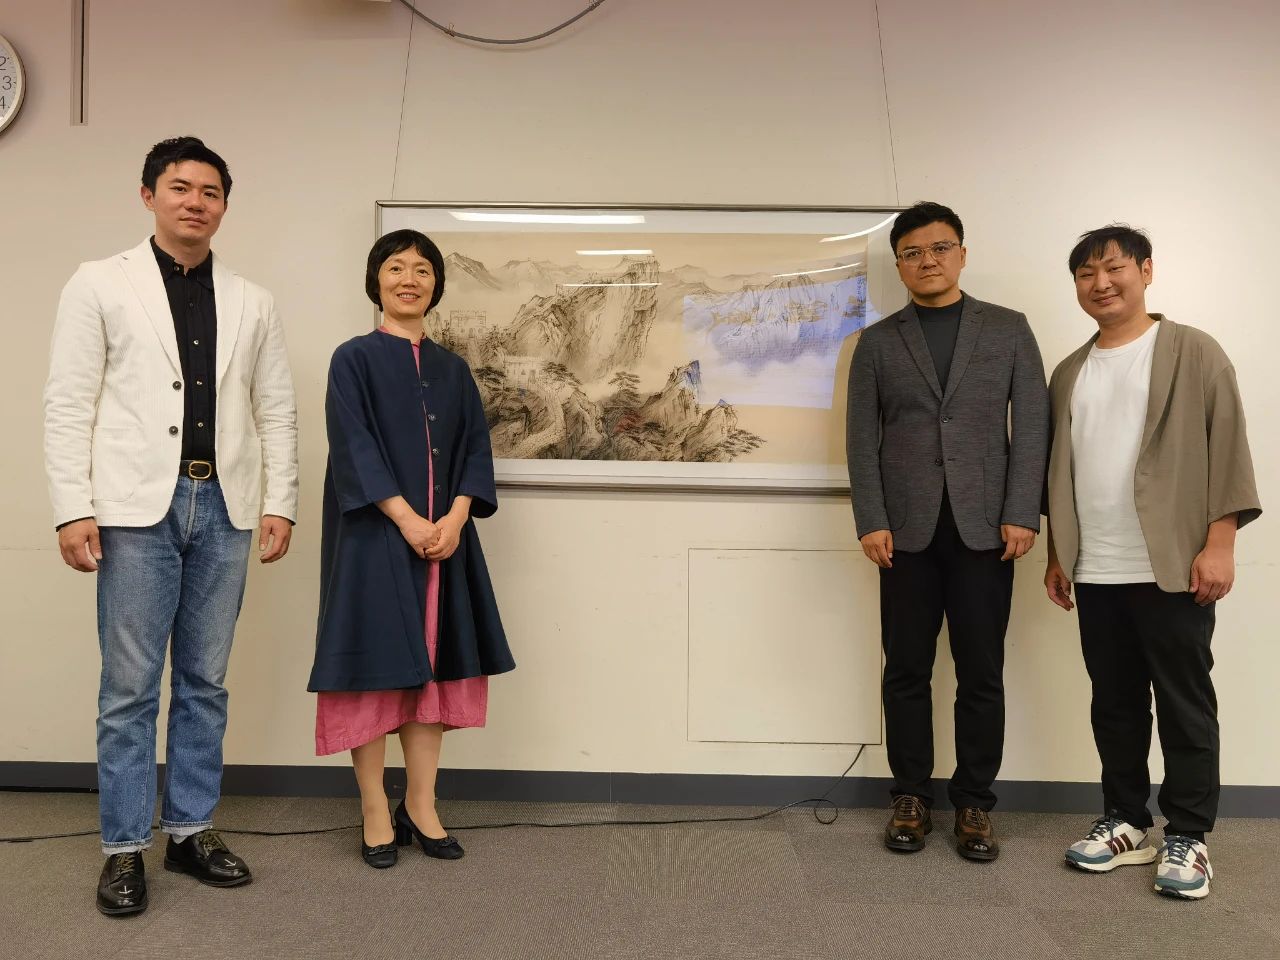 中国国家画院参展艺术家向千代田教育集团赠送作品